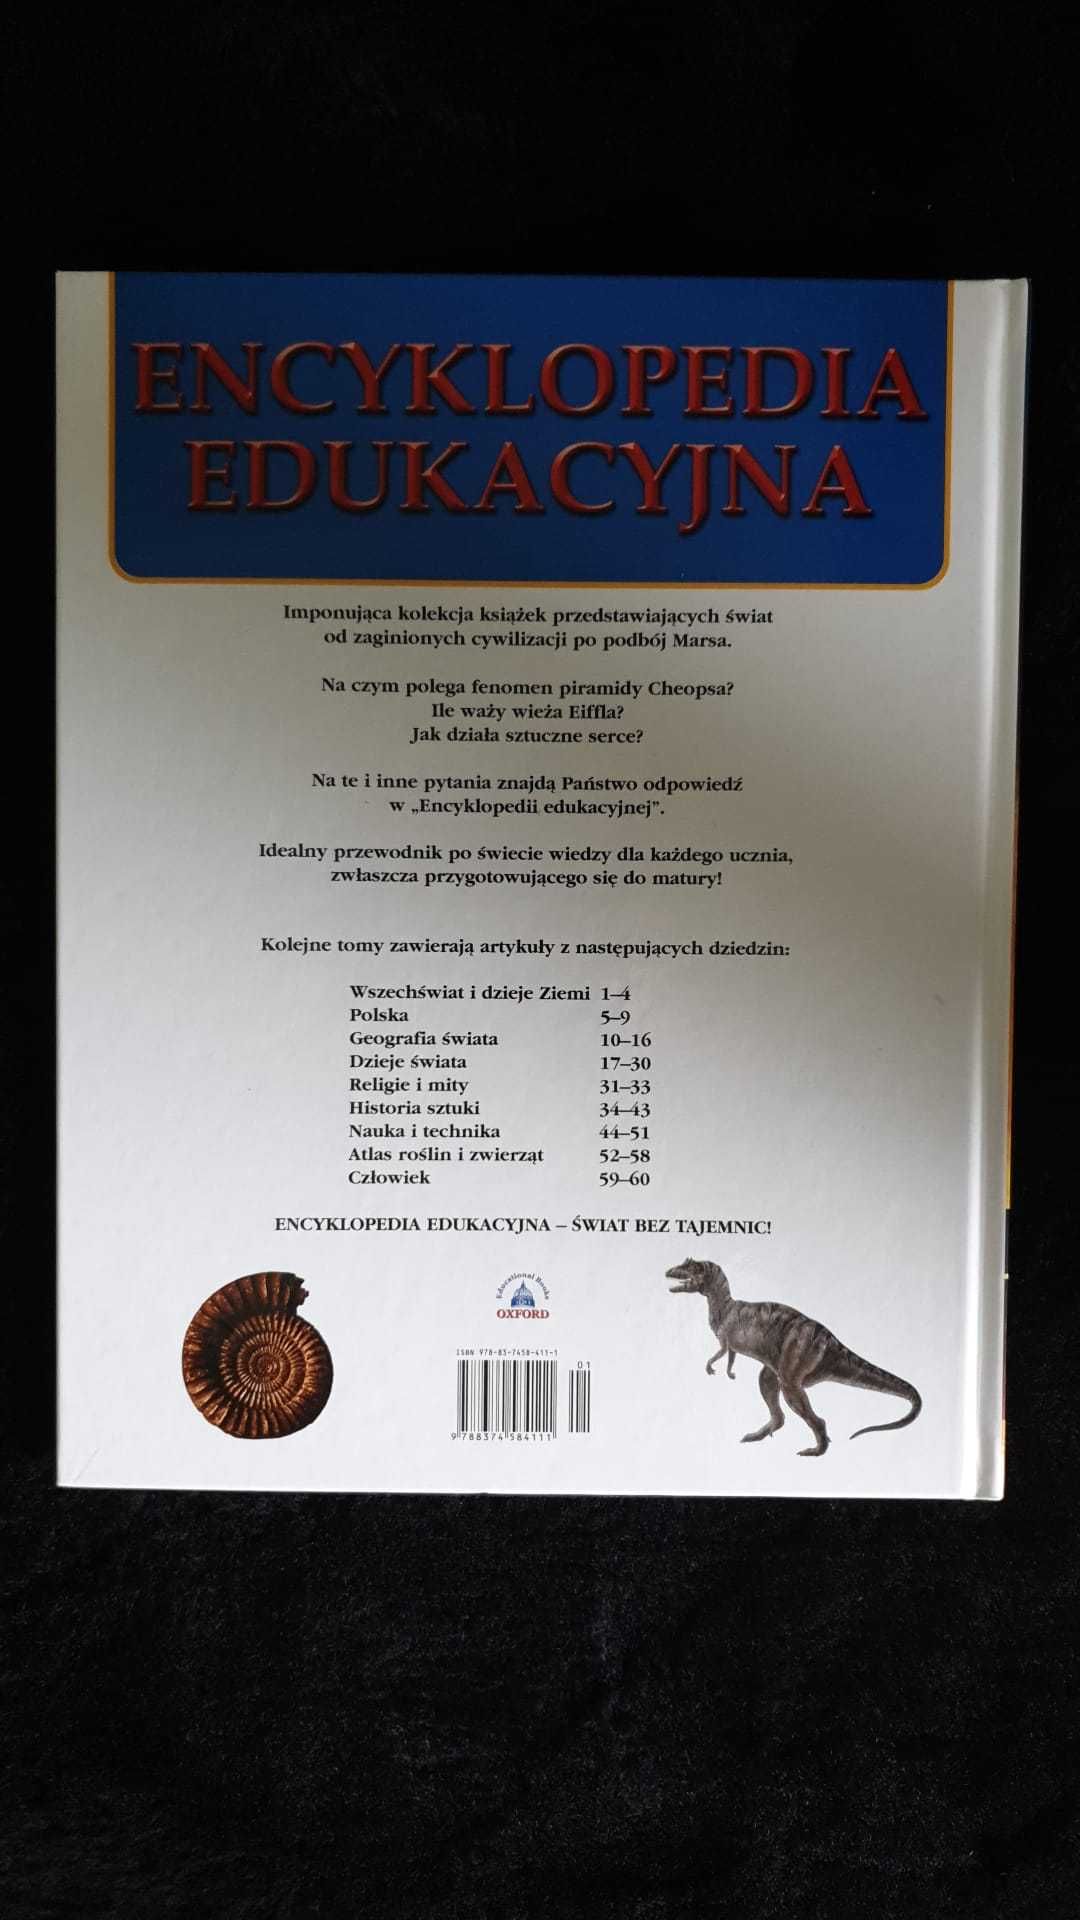 Encyklopedia edukacyjna. Tom 1. Wszechświat. Dzieje ziemi